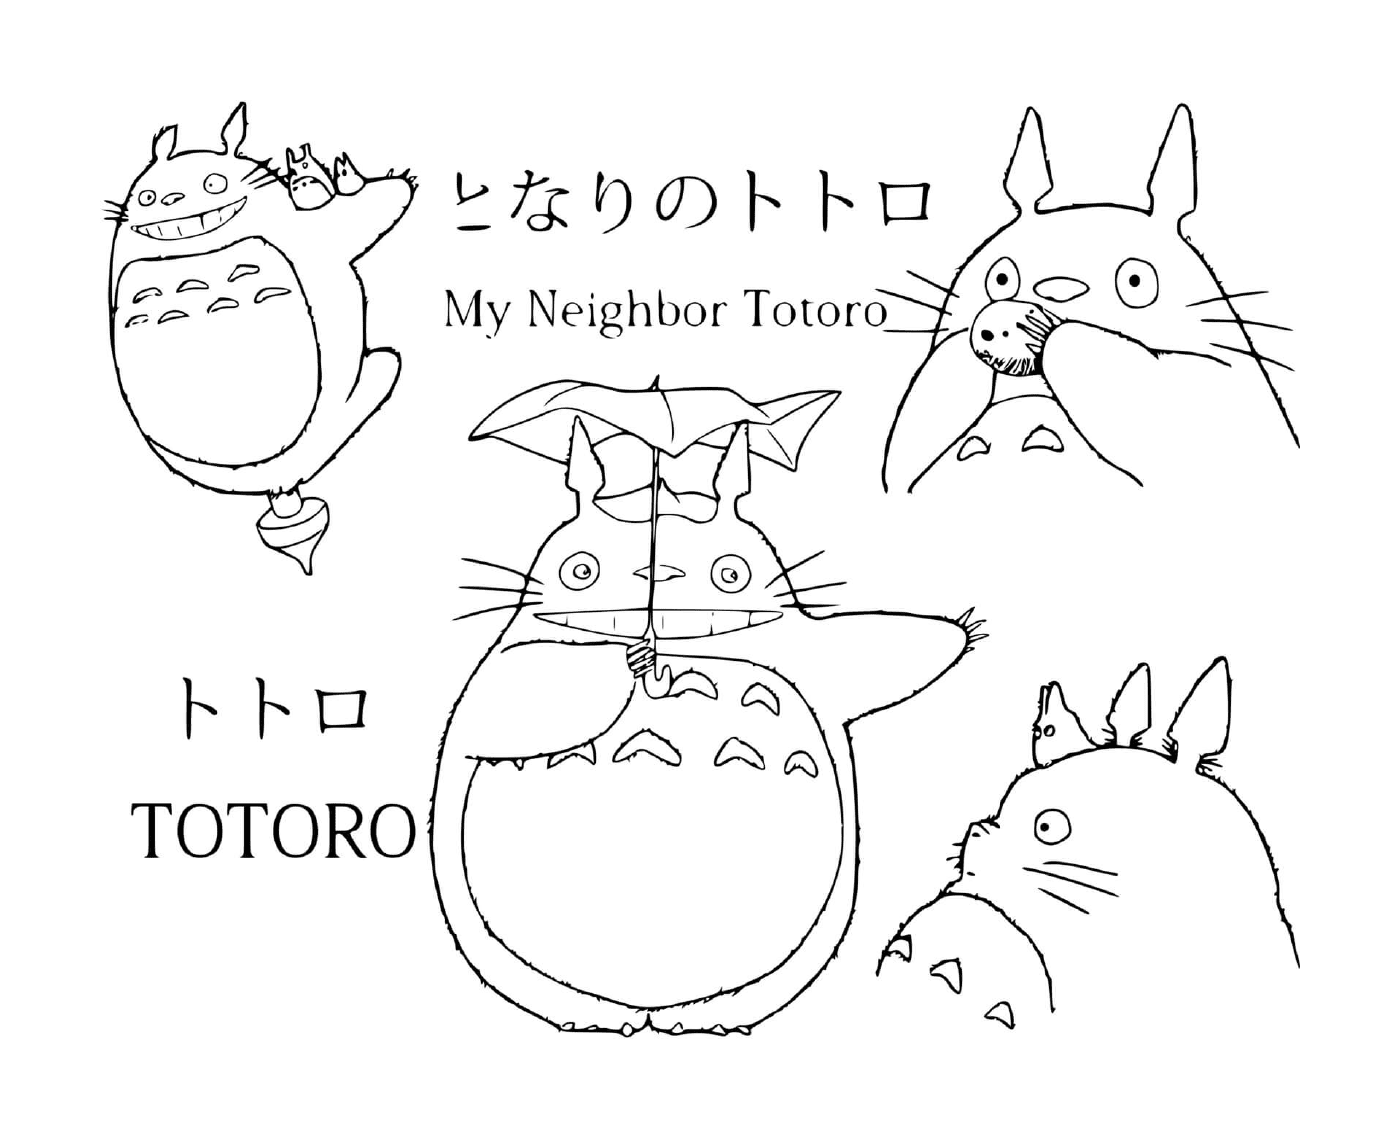  Gruppo di Totoro disegnato in diverse pose 